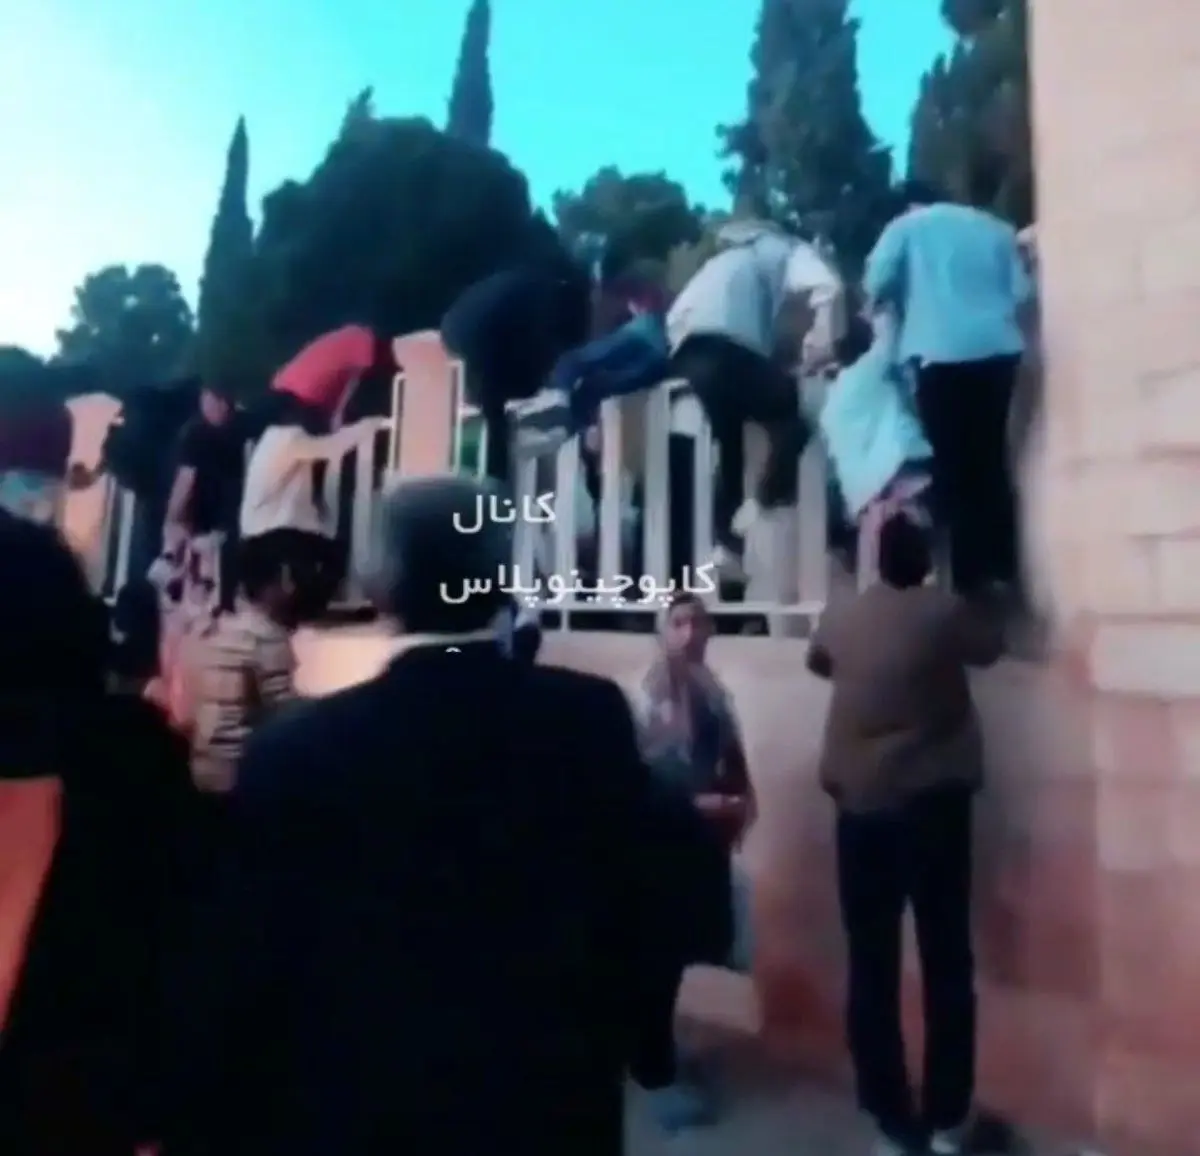 ورود عجیب بازدیدکنندگان به حافظیه شیراز | بالا رفتن از در و دیوار!+ویدئو